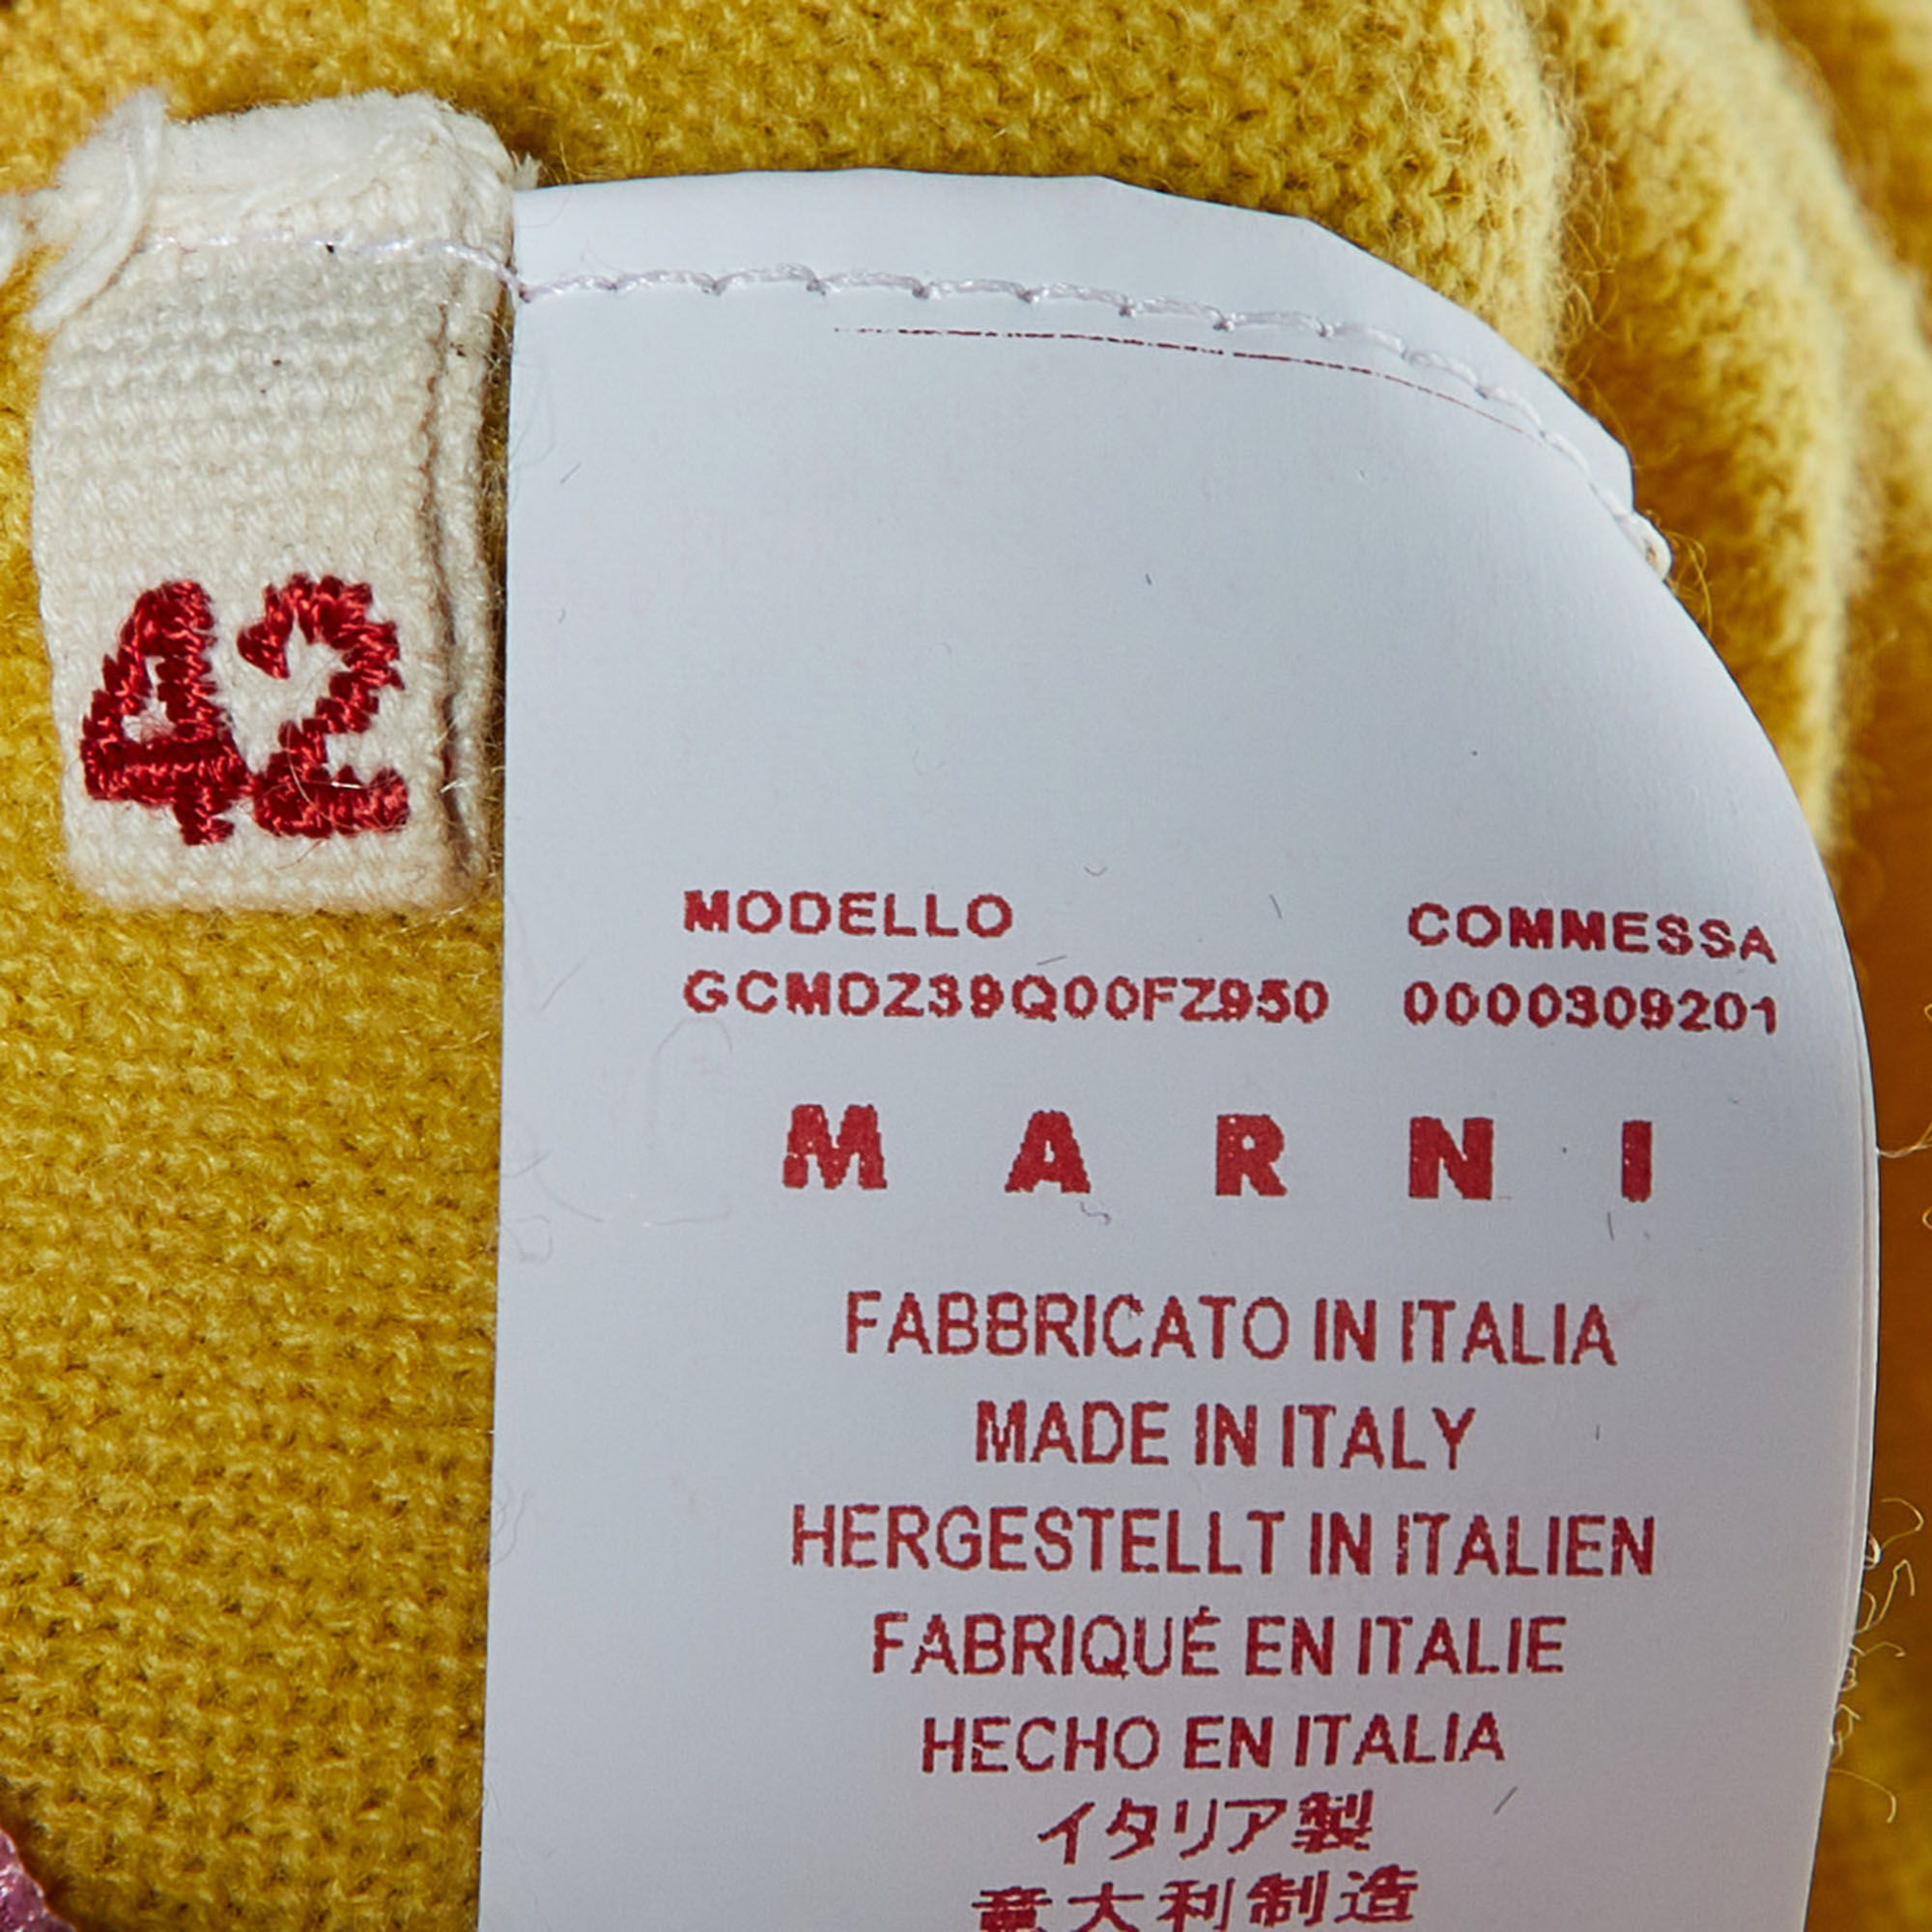 Marni Yellow Knit & Pink Cotton Layered Sweater M